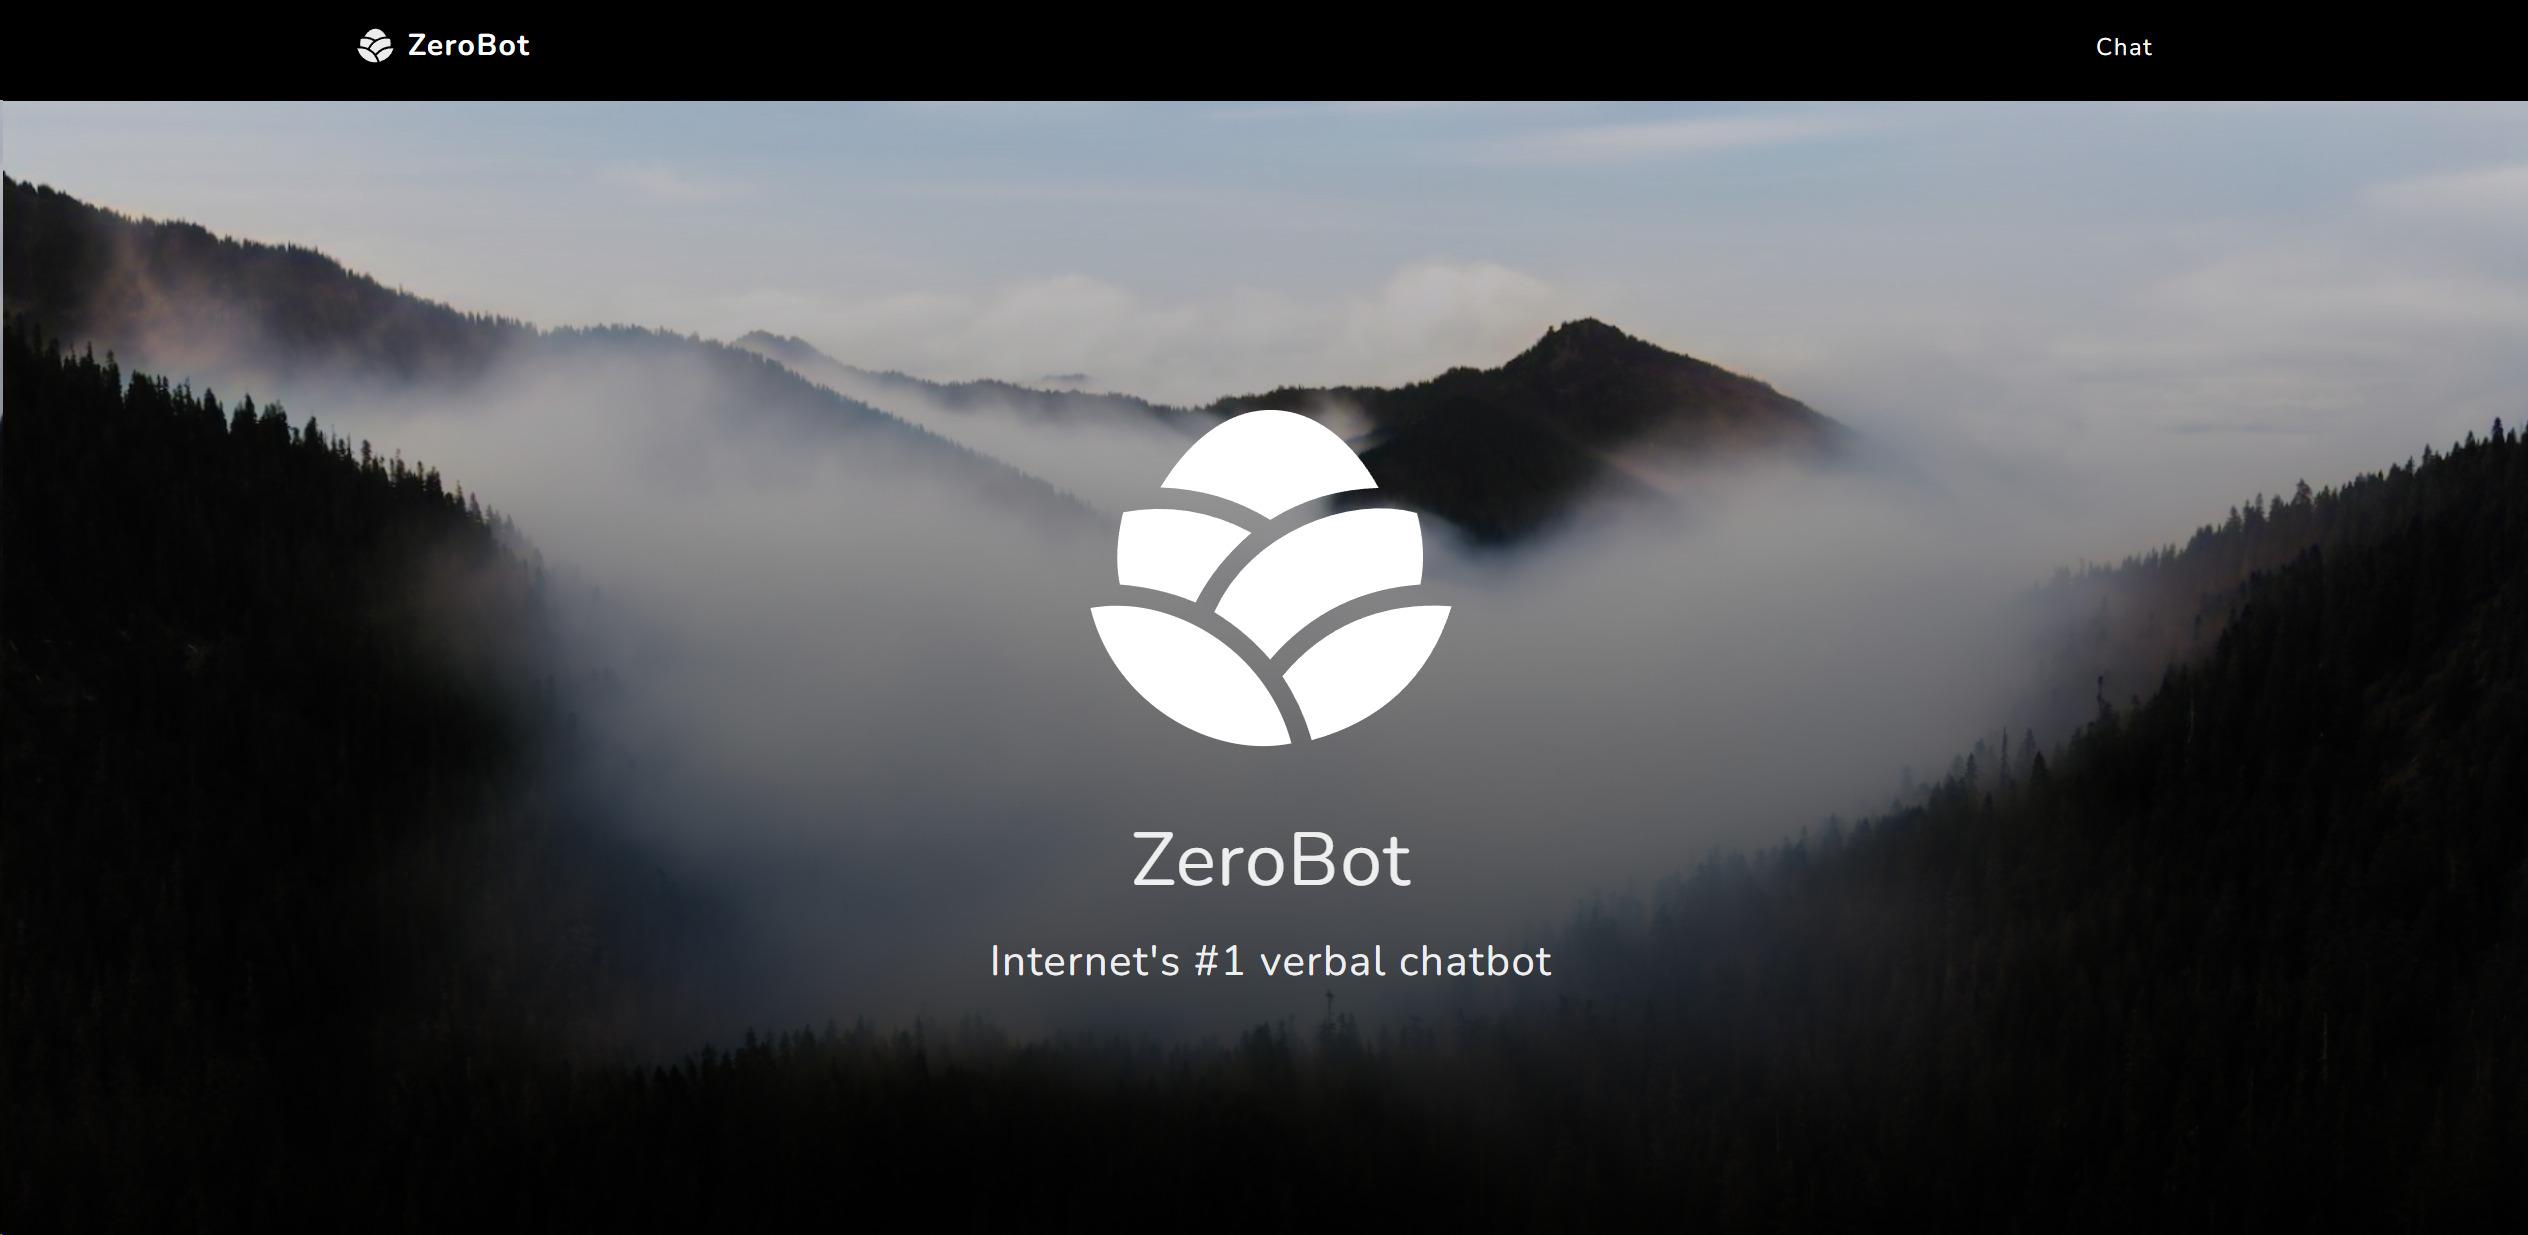 ZeroBot